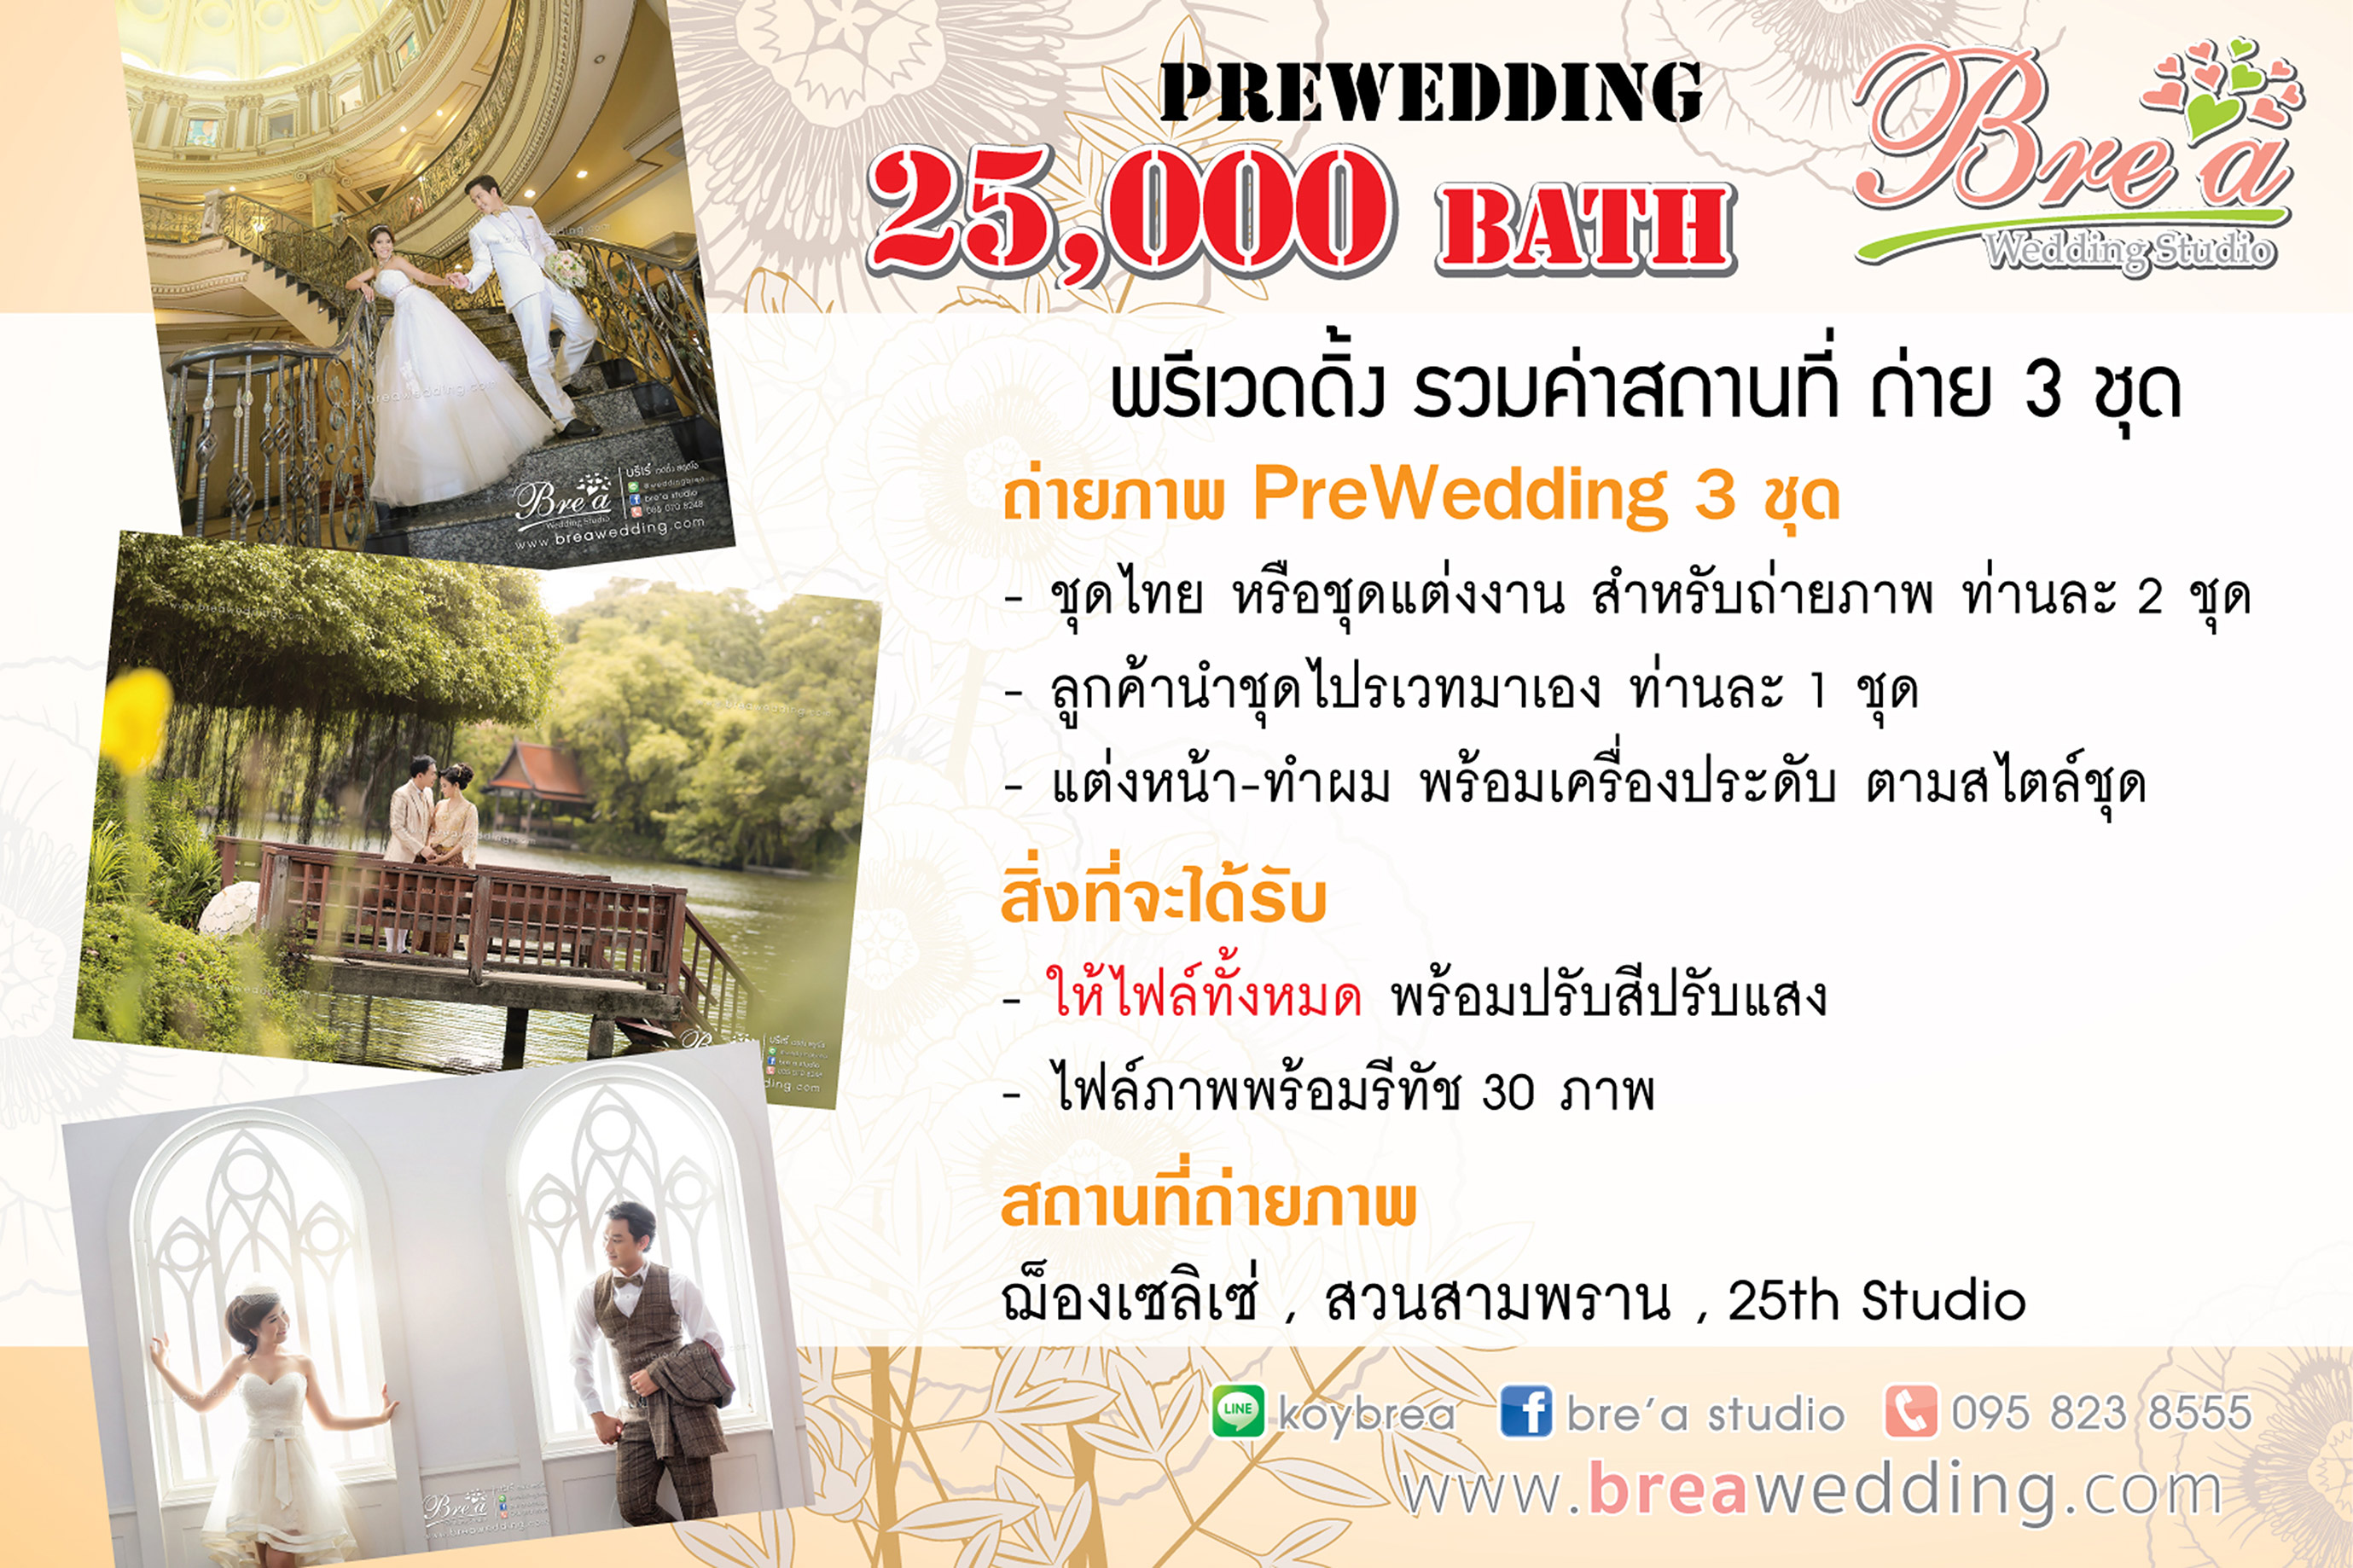 PreWedding ราคาถ่ายรูปแต่งงาน ถ่ายพรีเวดดิ้ง ร้านเวดดิ้ง บางบัวทอง นนทบุรี